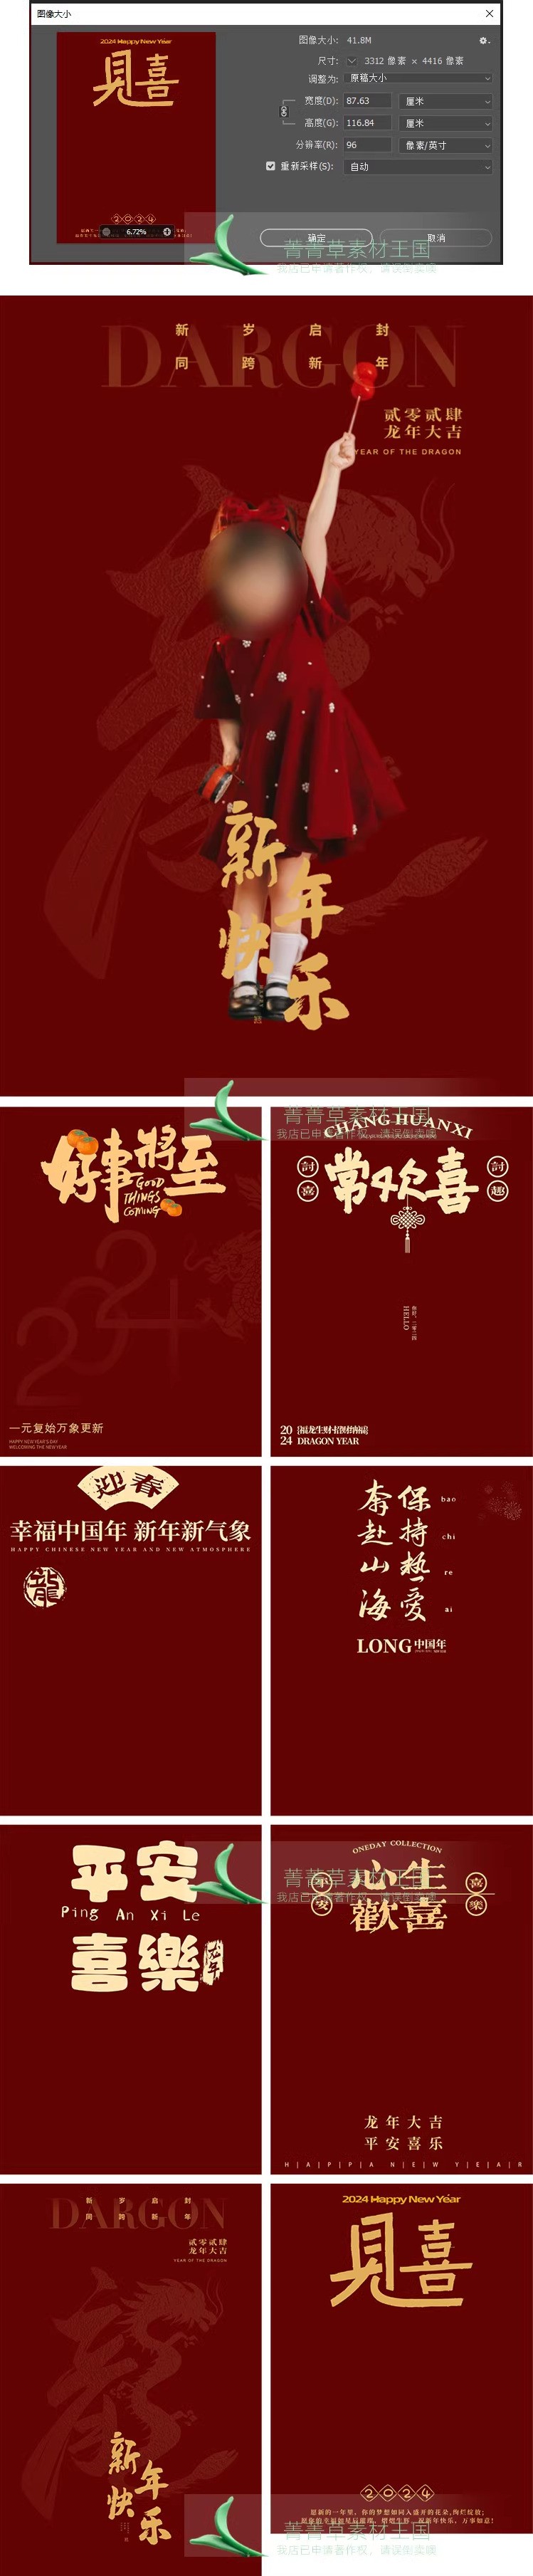 Psd-3993, Bộ 16 Psd Chất Liệu Nền Và Bố Cục Văn Bản Phong Cách Trung Hoa Ghép ảnh Tết Trẻ Em (1)